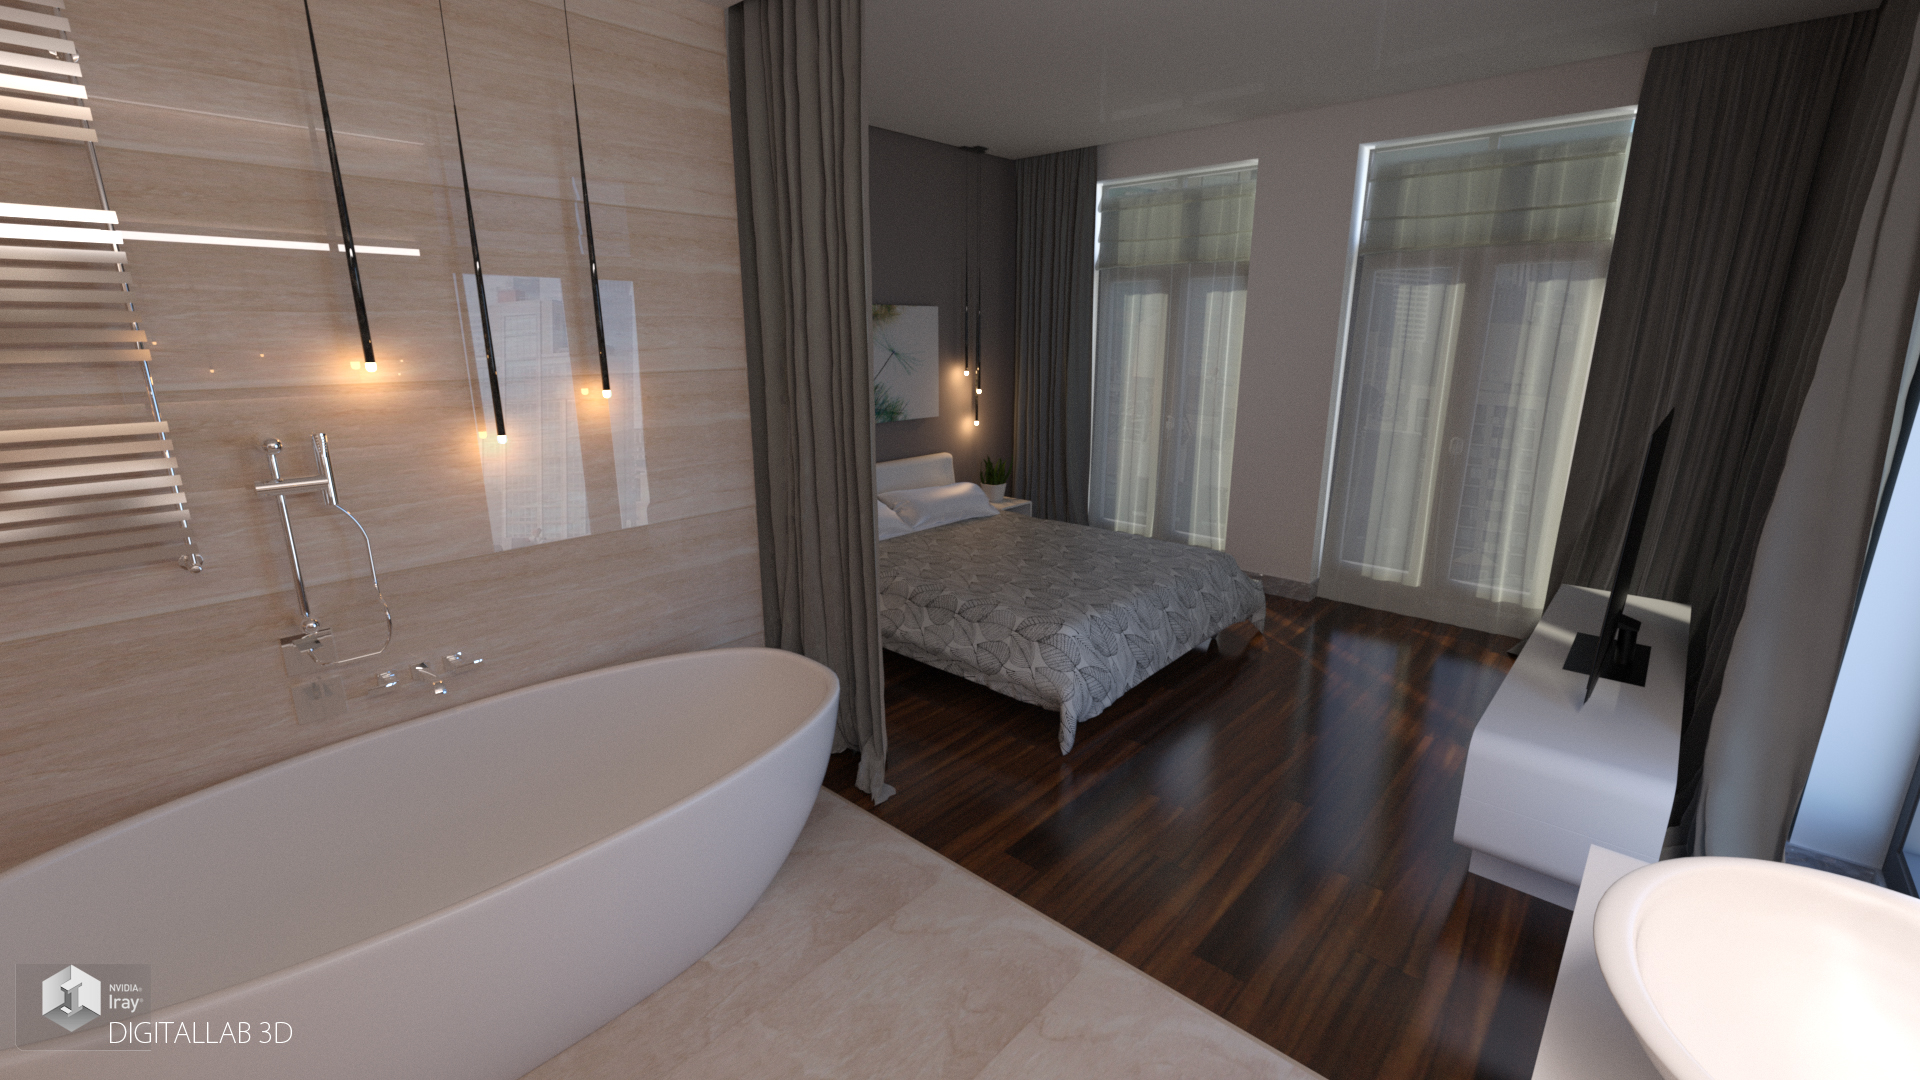 Designer Bedroom by: Digitallab3D, 3D Models by Daz 3D